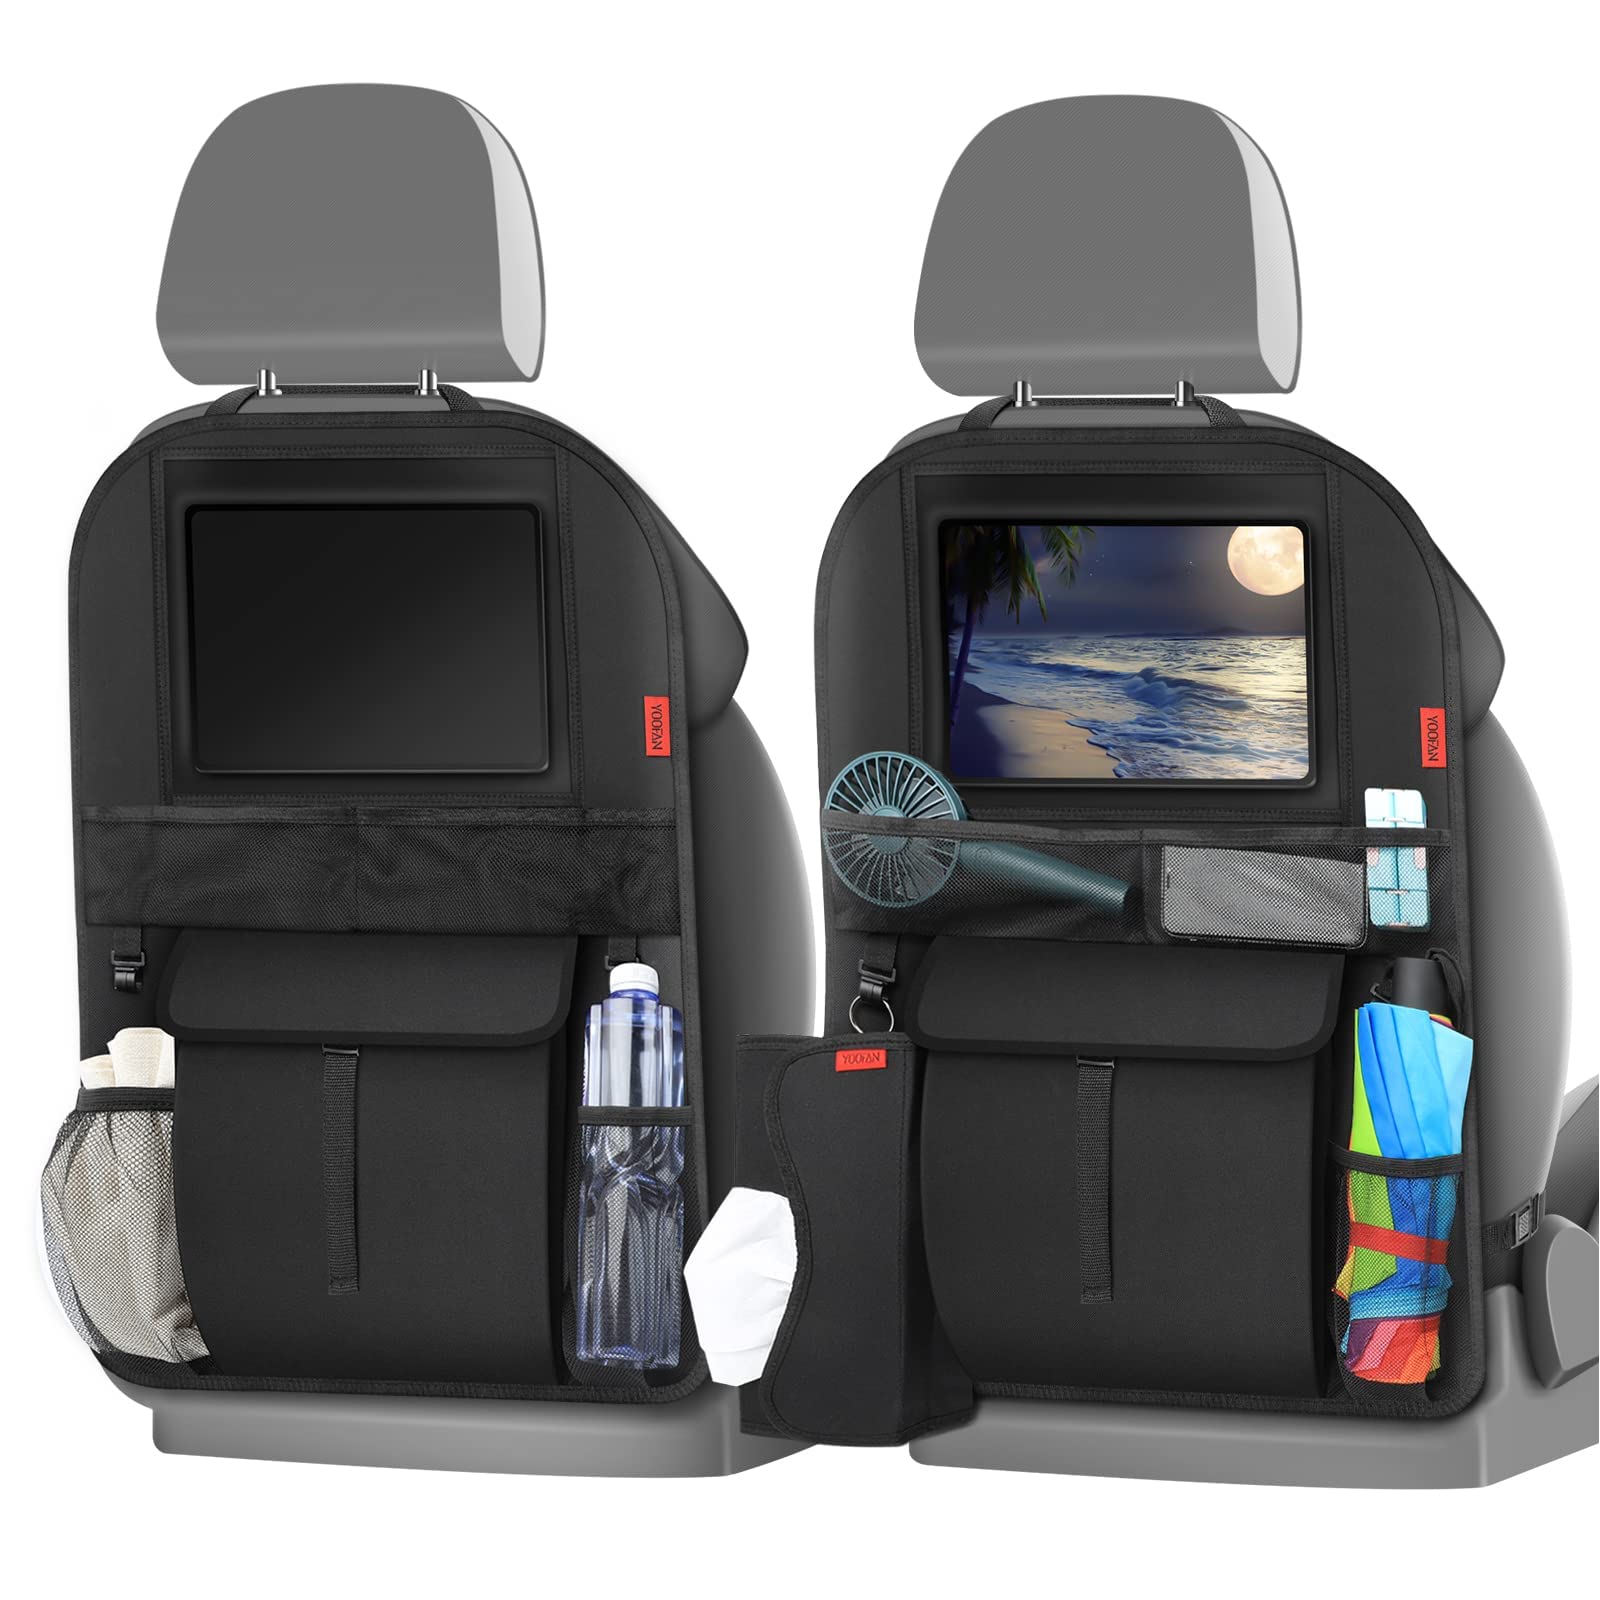 YOOFAN Auto Rückenlehnenschutz (2 Stück) Kinder Auto Organizer Wasserdicht Autositzschoner mit Große Taschen und iPad-/Tablet-Fach Kick-Matten-Schutz für Autositz